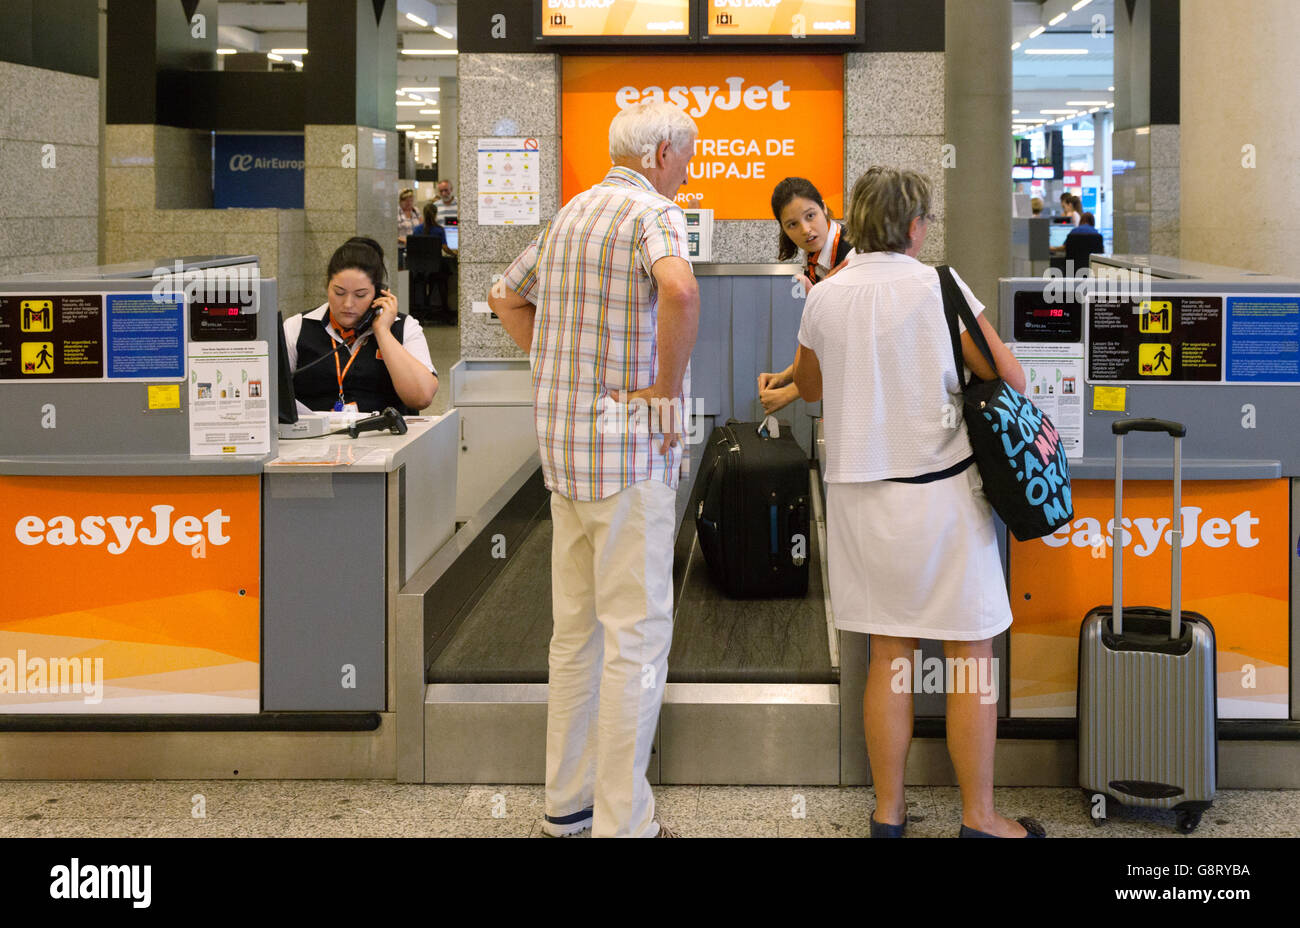 Comprobación de equipaje del aeropuerto de pasajeros; en el de Easyjet, facturación de equipajes del aeropuerto de Palma, Mallorca (Mallorca), Islas Europa Fotografía de stock - Alamy